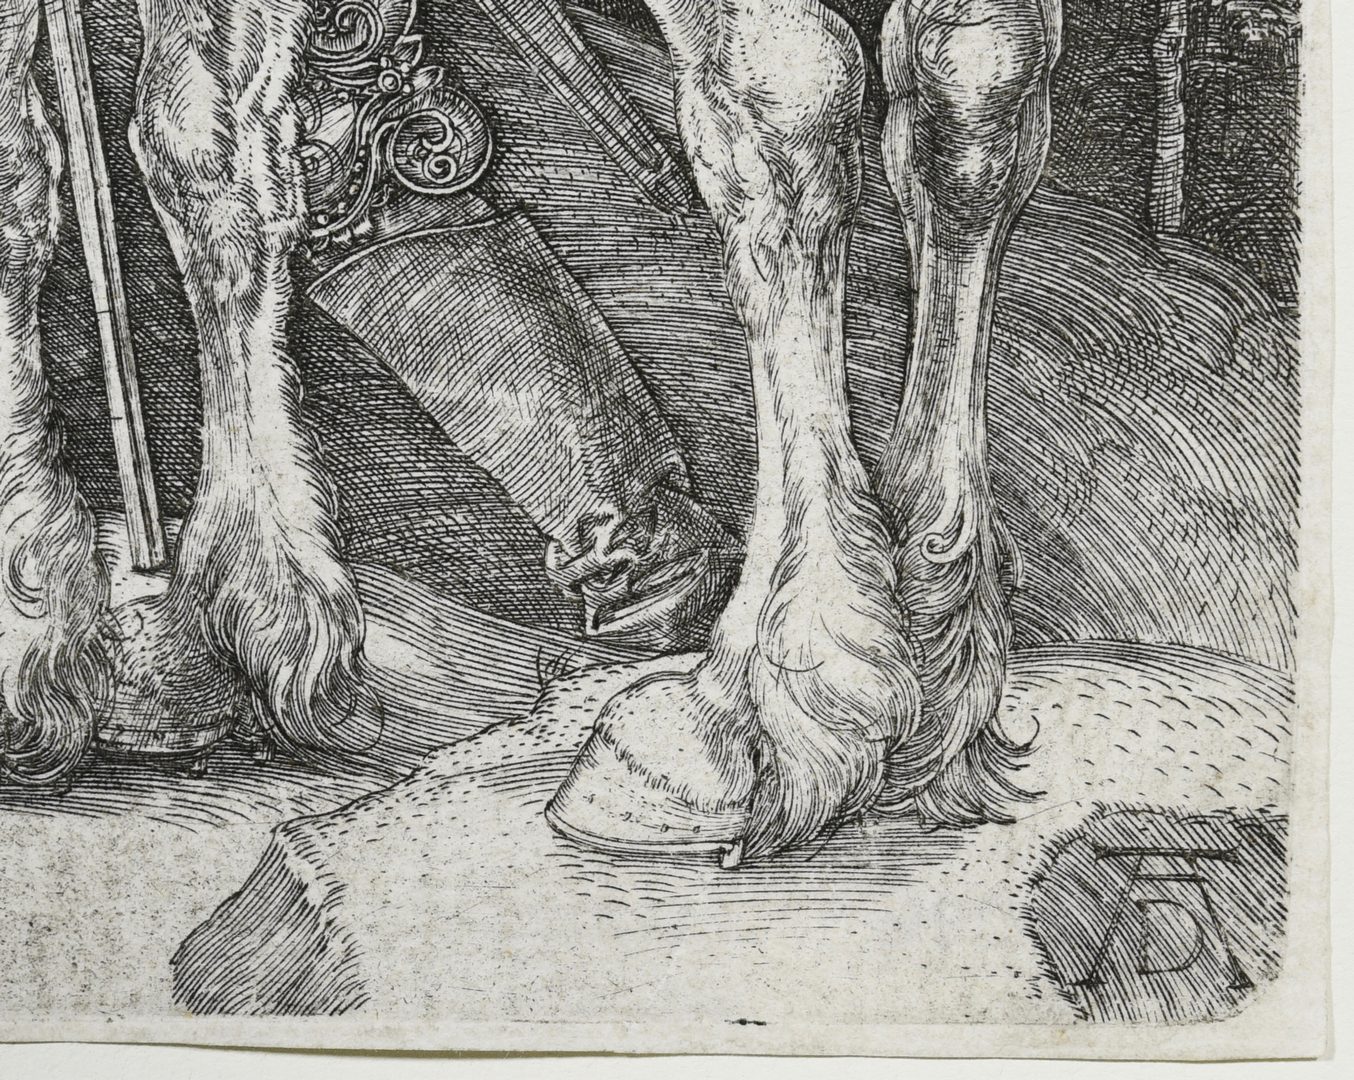 Lot 357: Albrecht Durer "The Large Horse" engraving